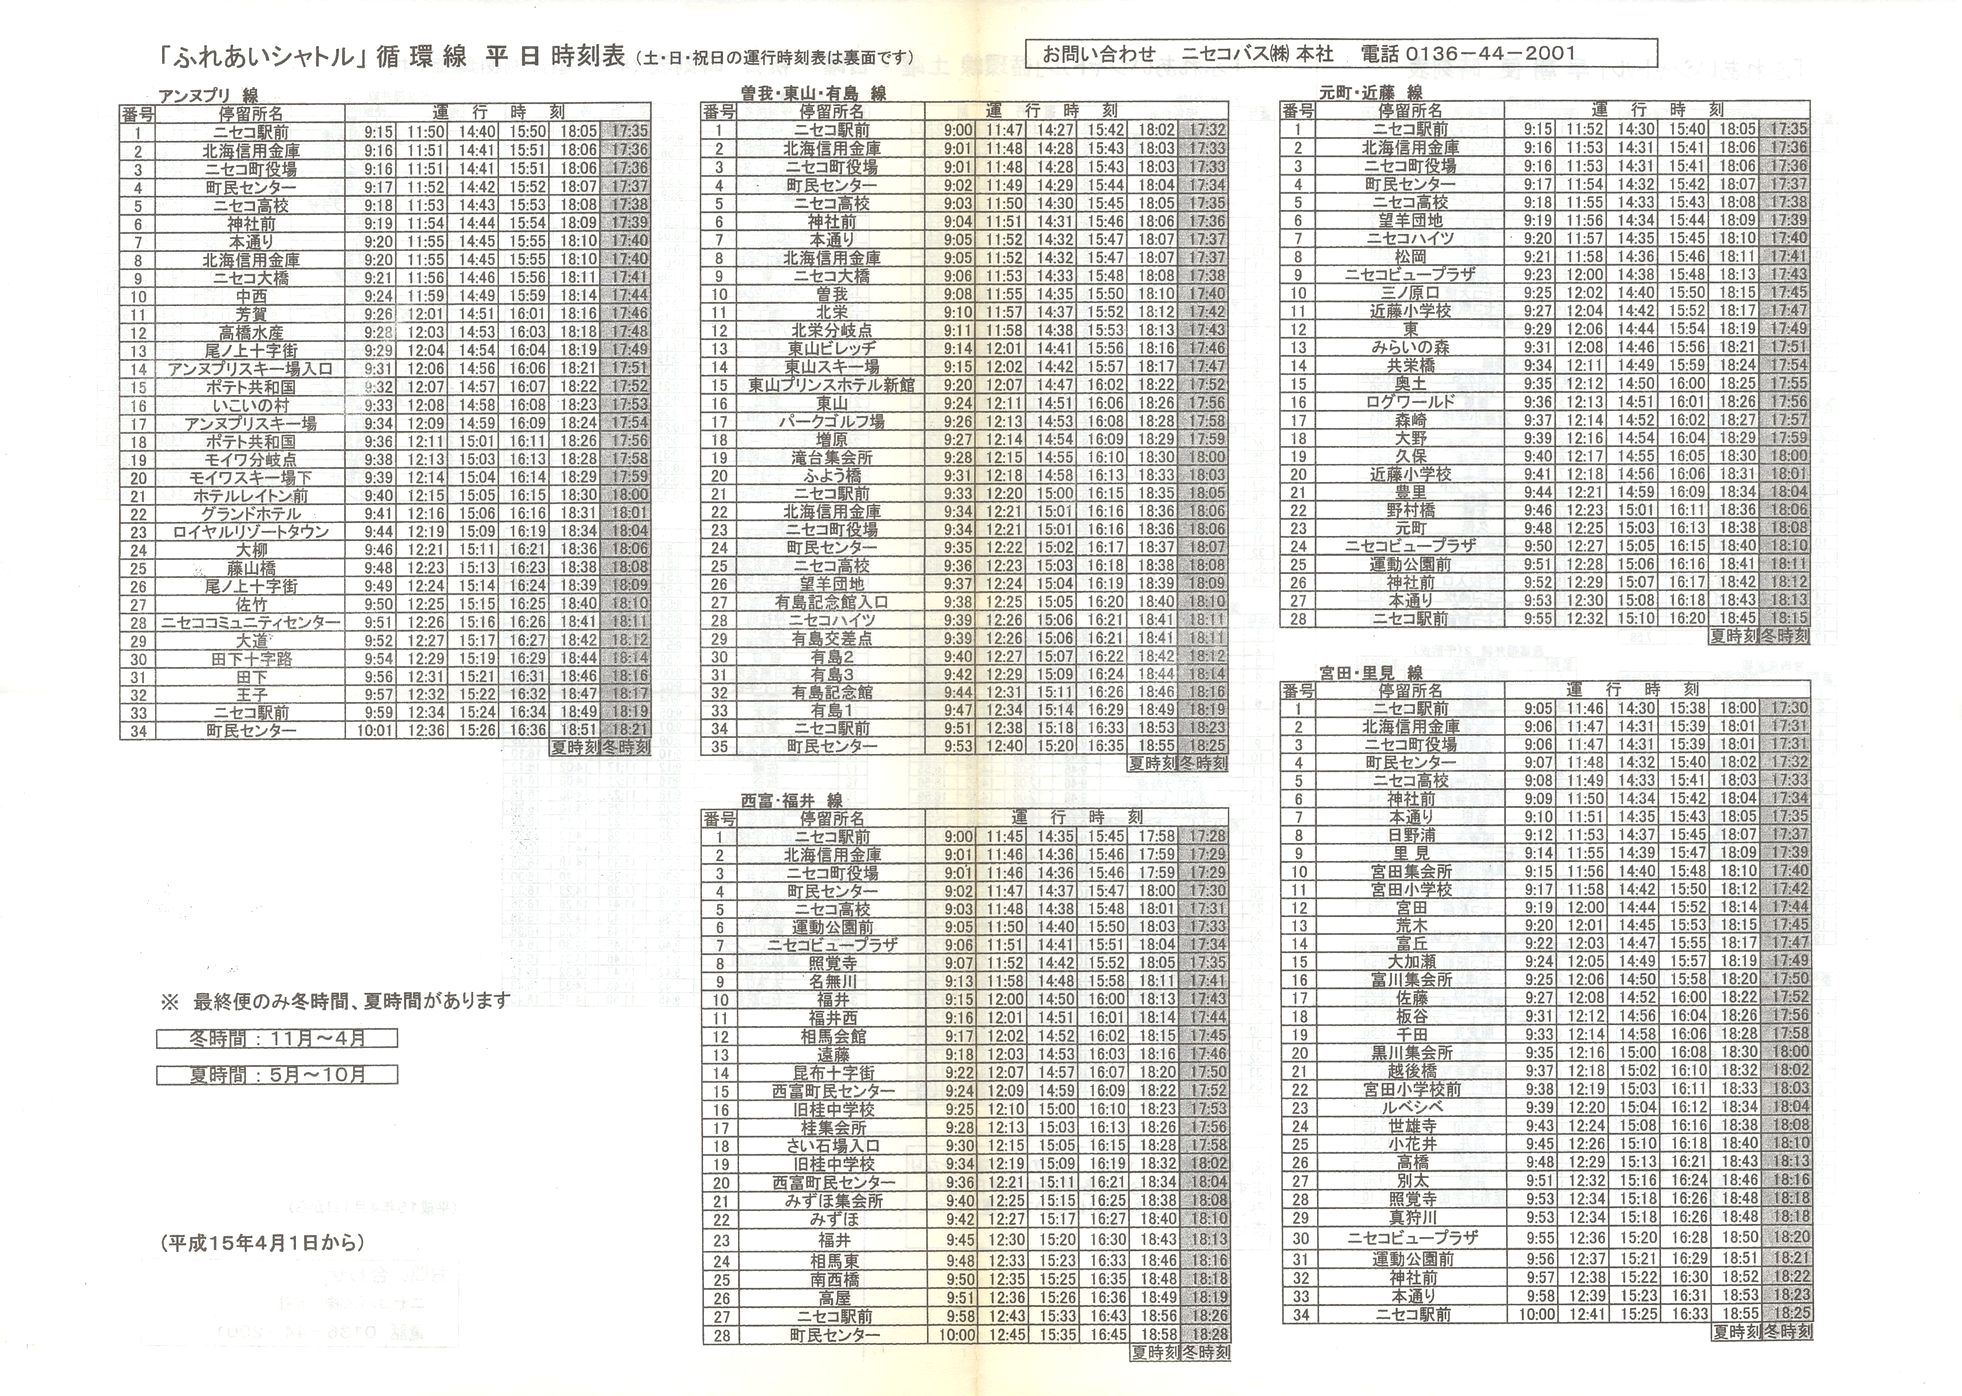 2003-04-01改正_ニセコバス_ふれあいシャトル時刻表表面